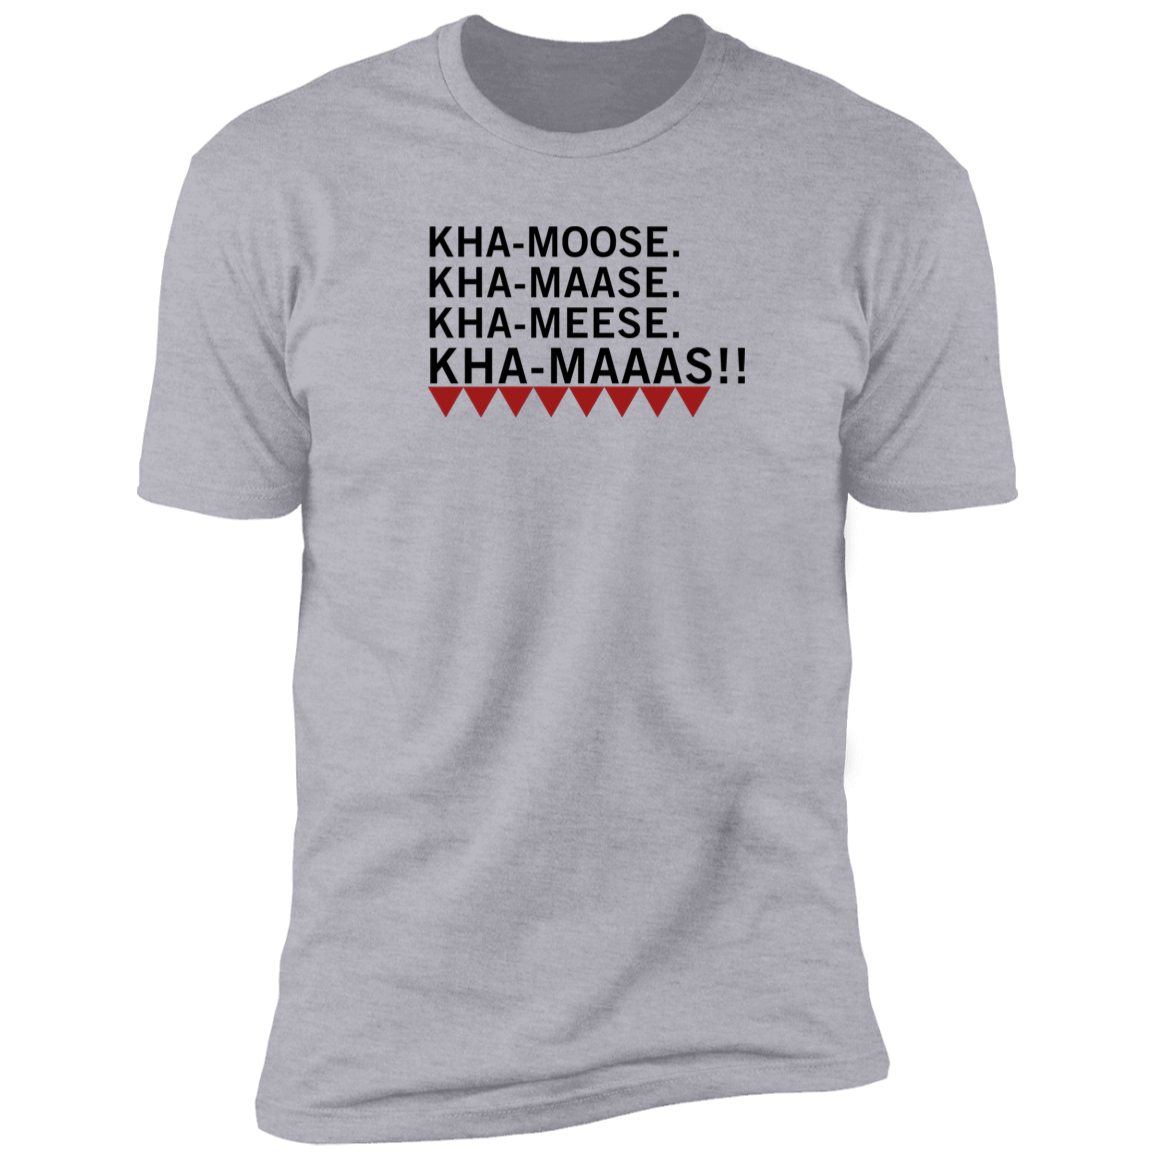 Kha-maaas Palestine Support Tshirt